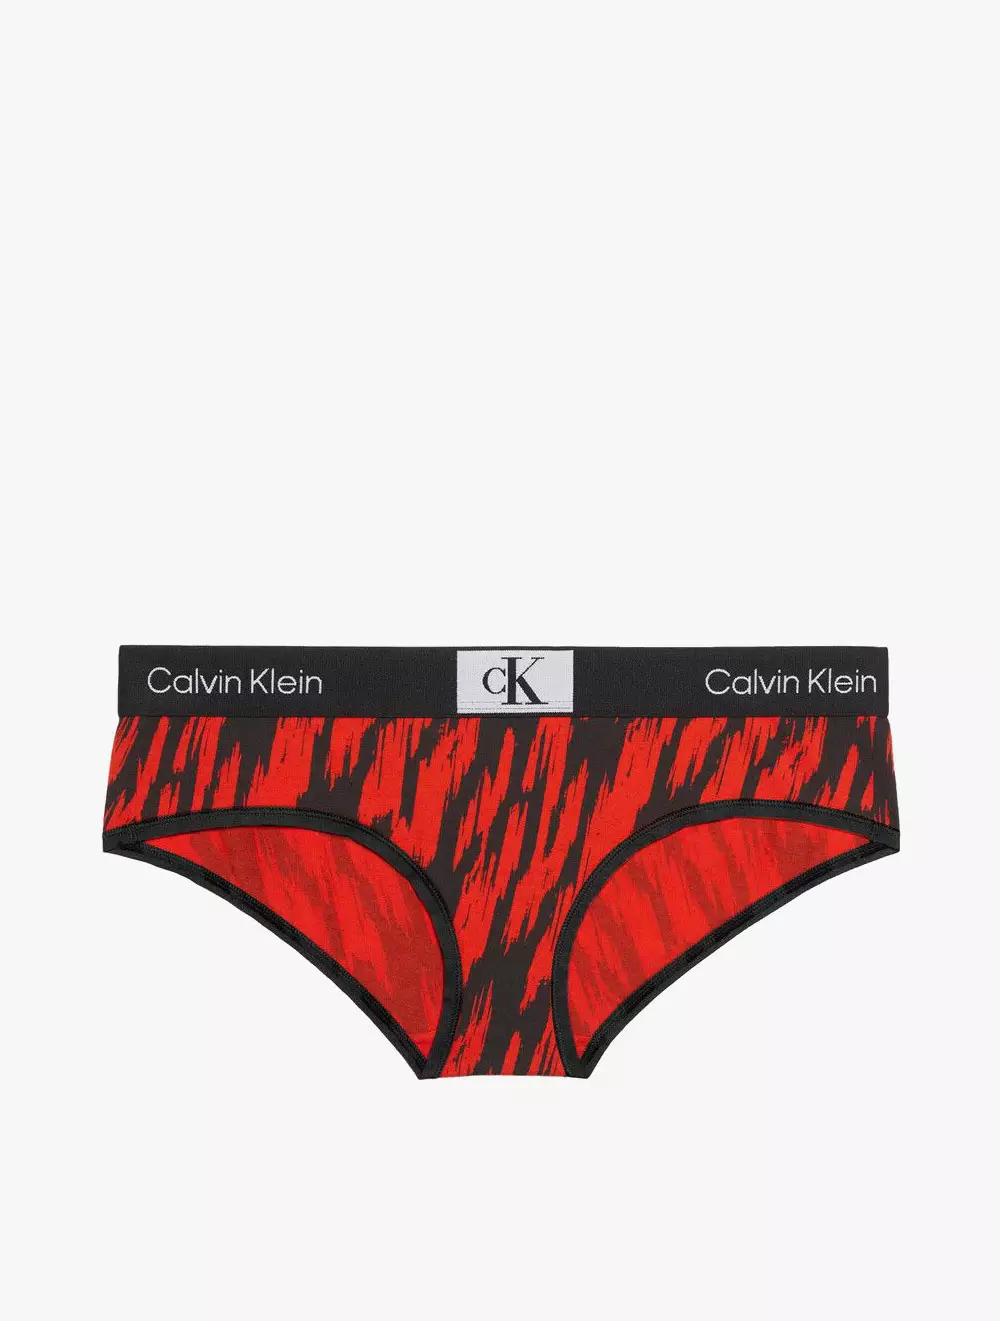 Jual CALVIN KLEIN Calvin Klein Underwear - CALVIN KLEIN 1996